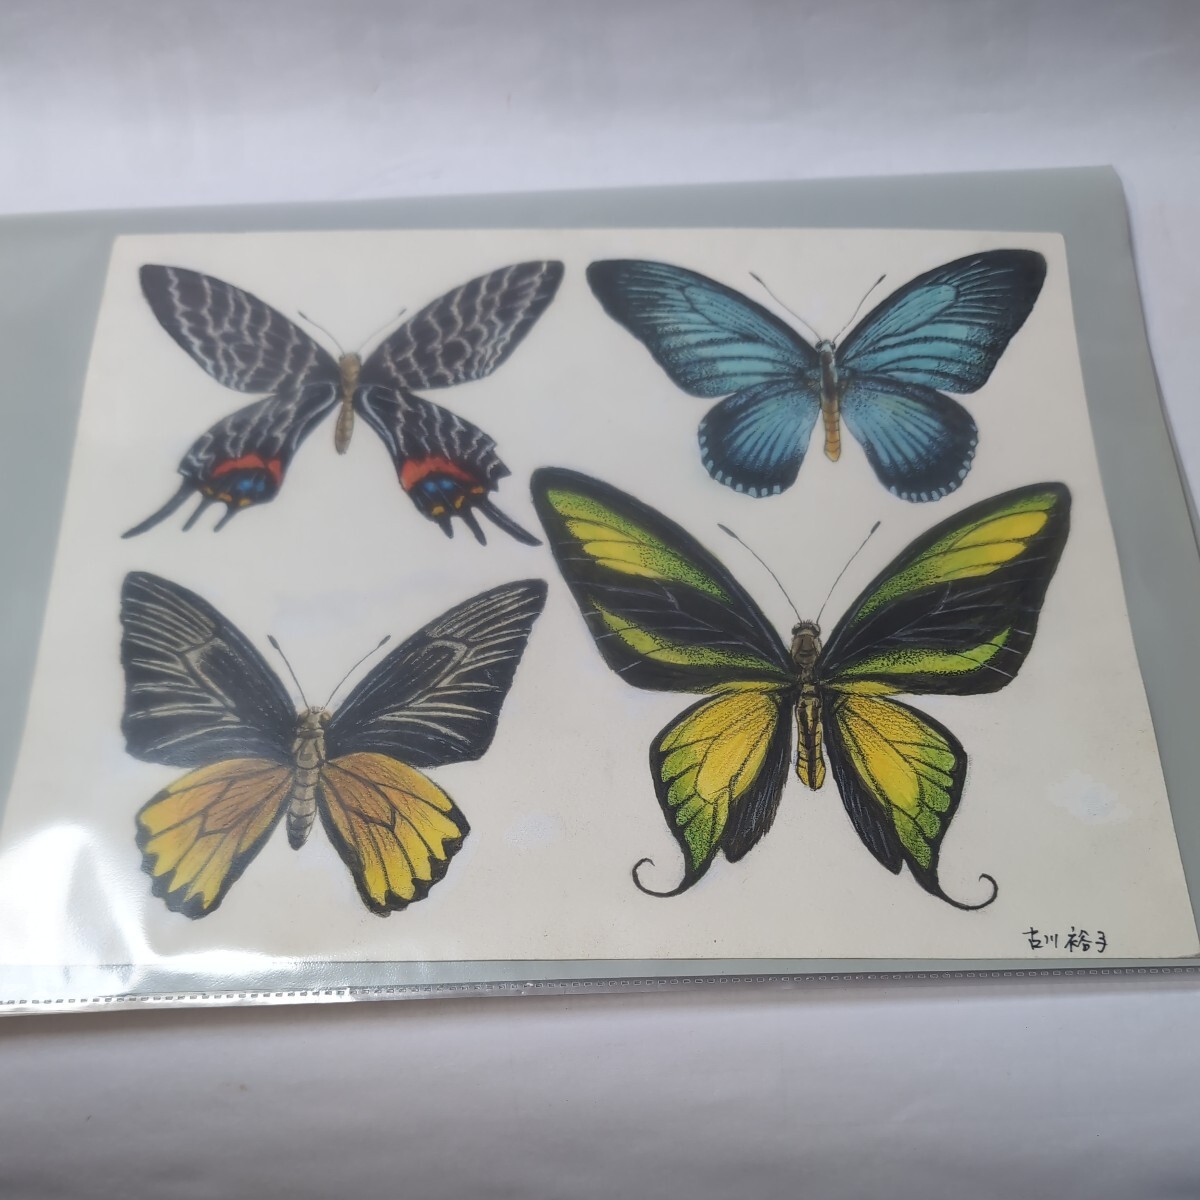 ■ 绘本作者, 古川裕子的作品■昆虫水彩画■蝴蝶原画■2, 绘画, 水彩, 动物画